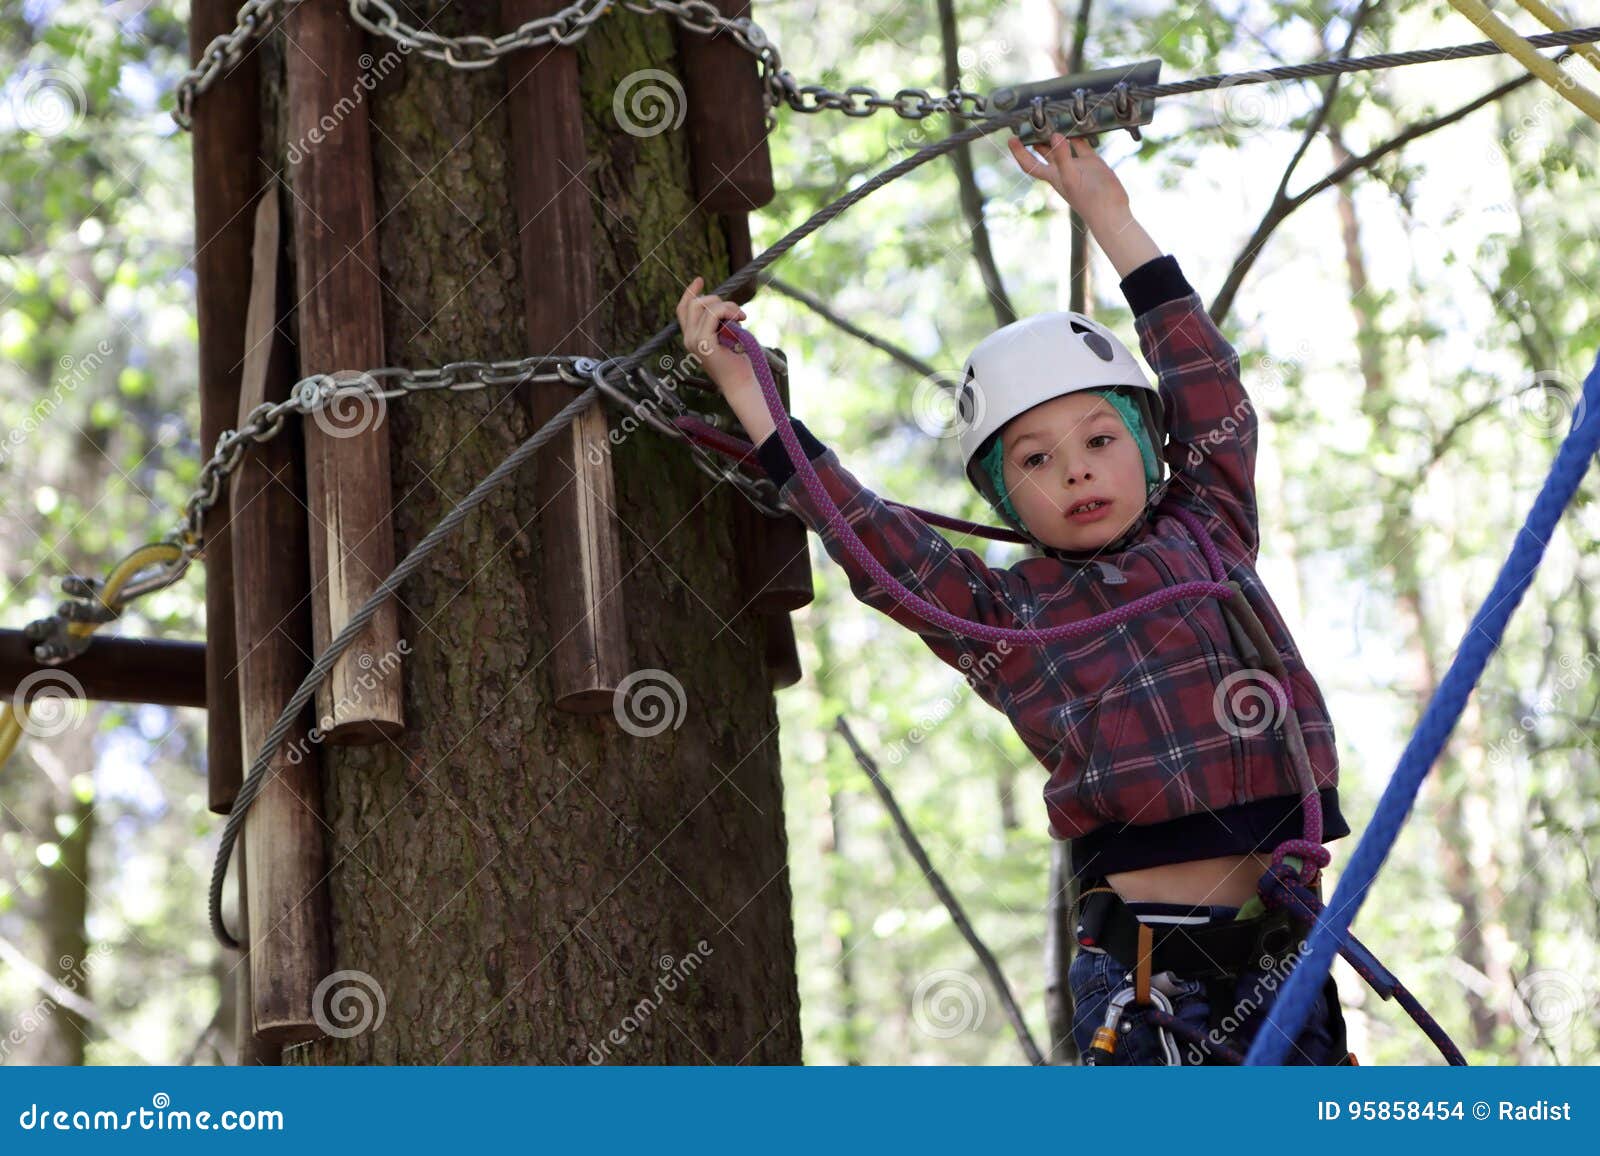 Забираться в чащу. Дети лазают по деревьям. Лазание по веревочному парку. Лазает в парке. Мальчишки лазают по деревьям.